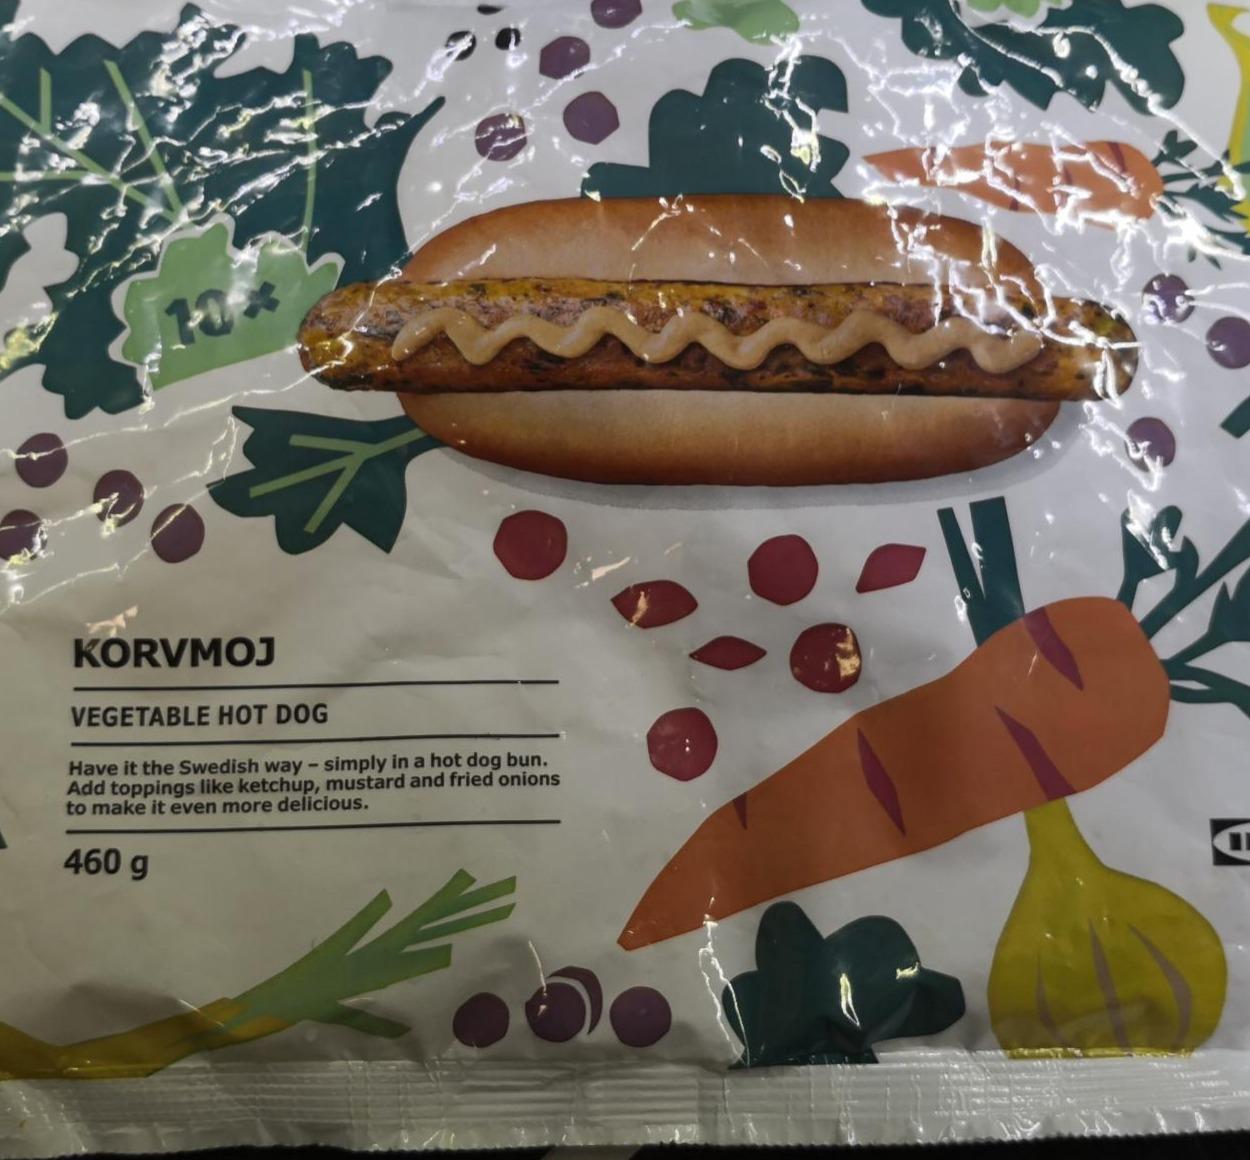 Képek - Vega hot dog Korvmoj Ikea